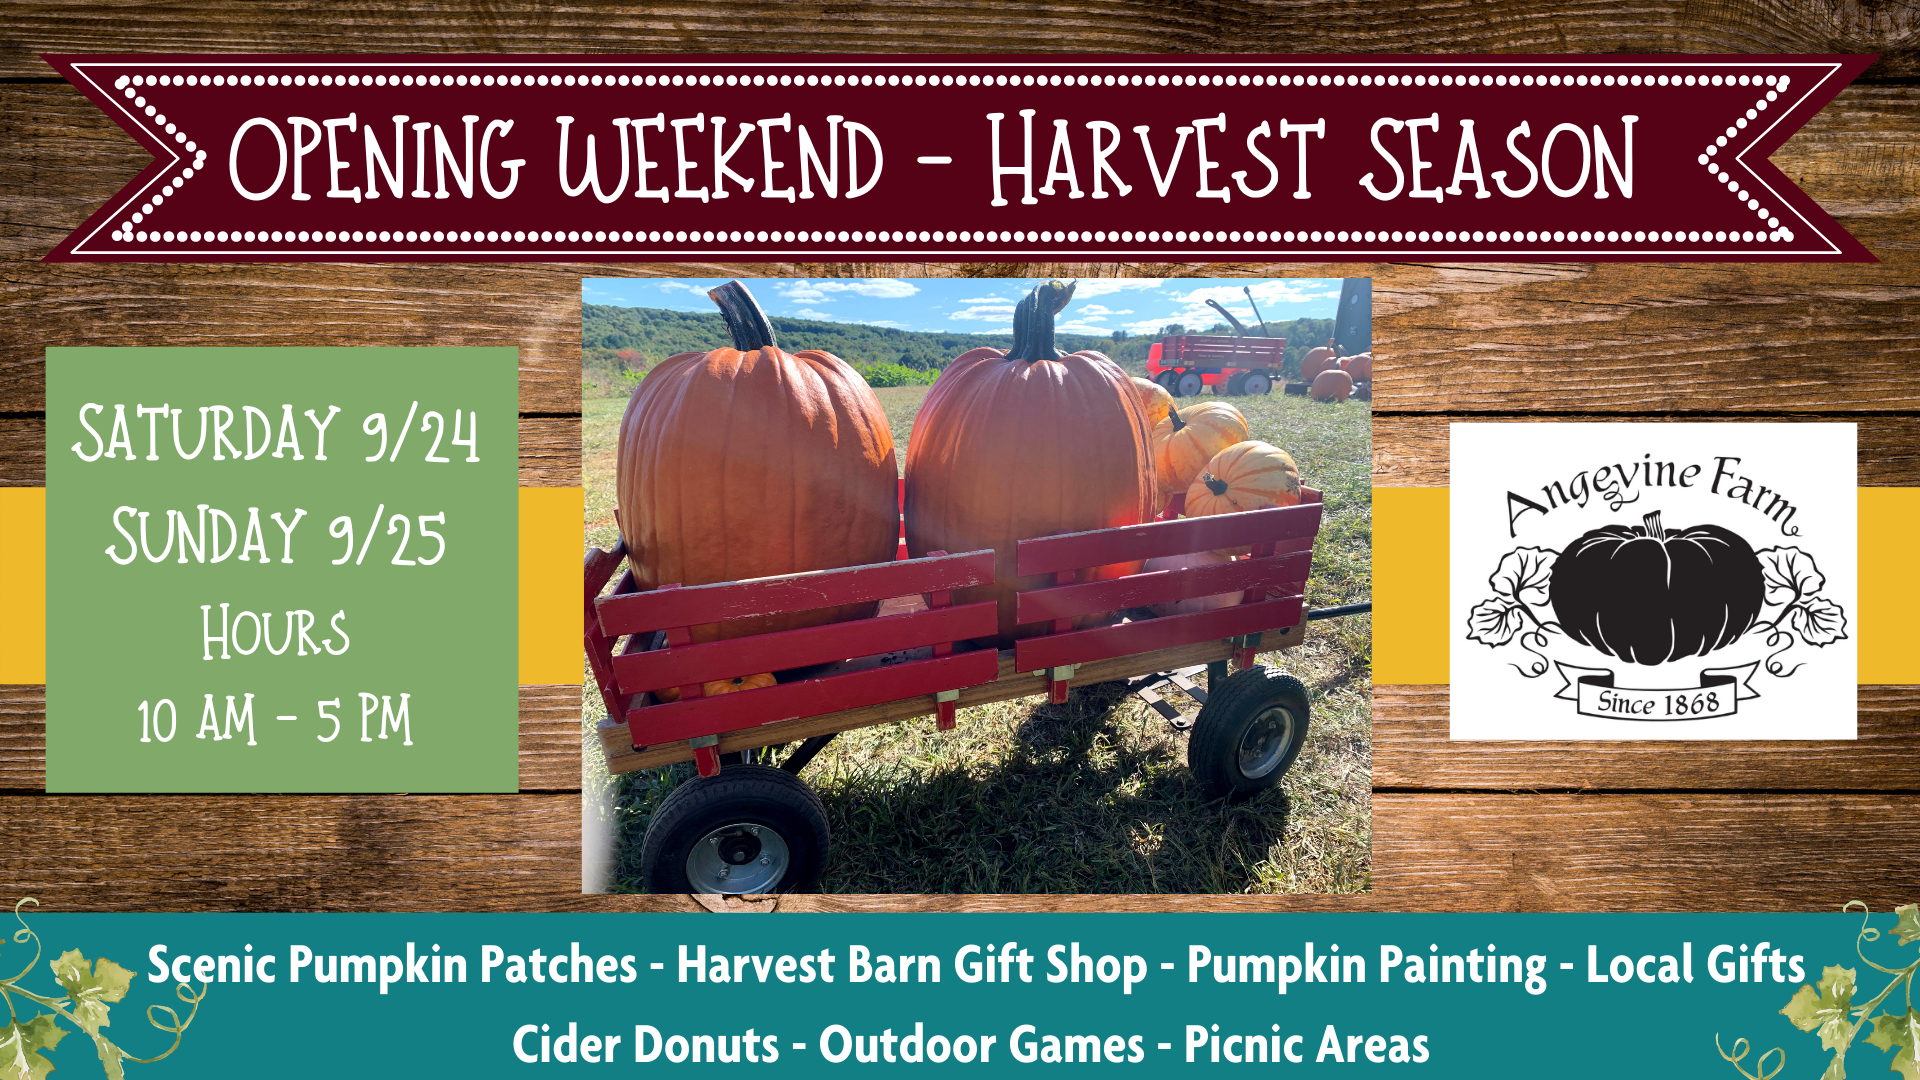 Opening Weekend - Harvest Season (1)